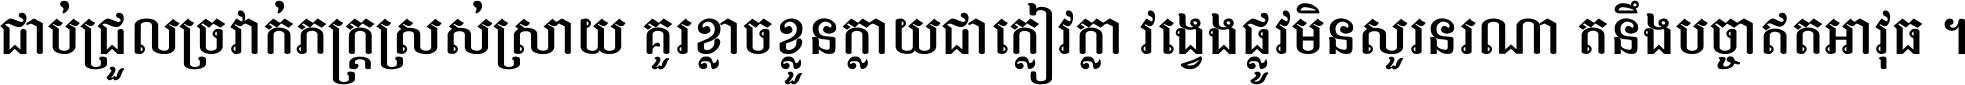 Khmer Chhay Text 2